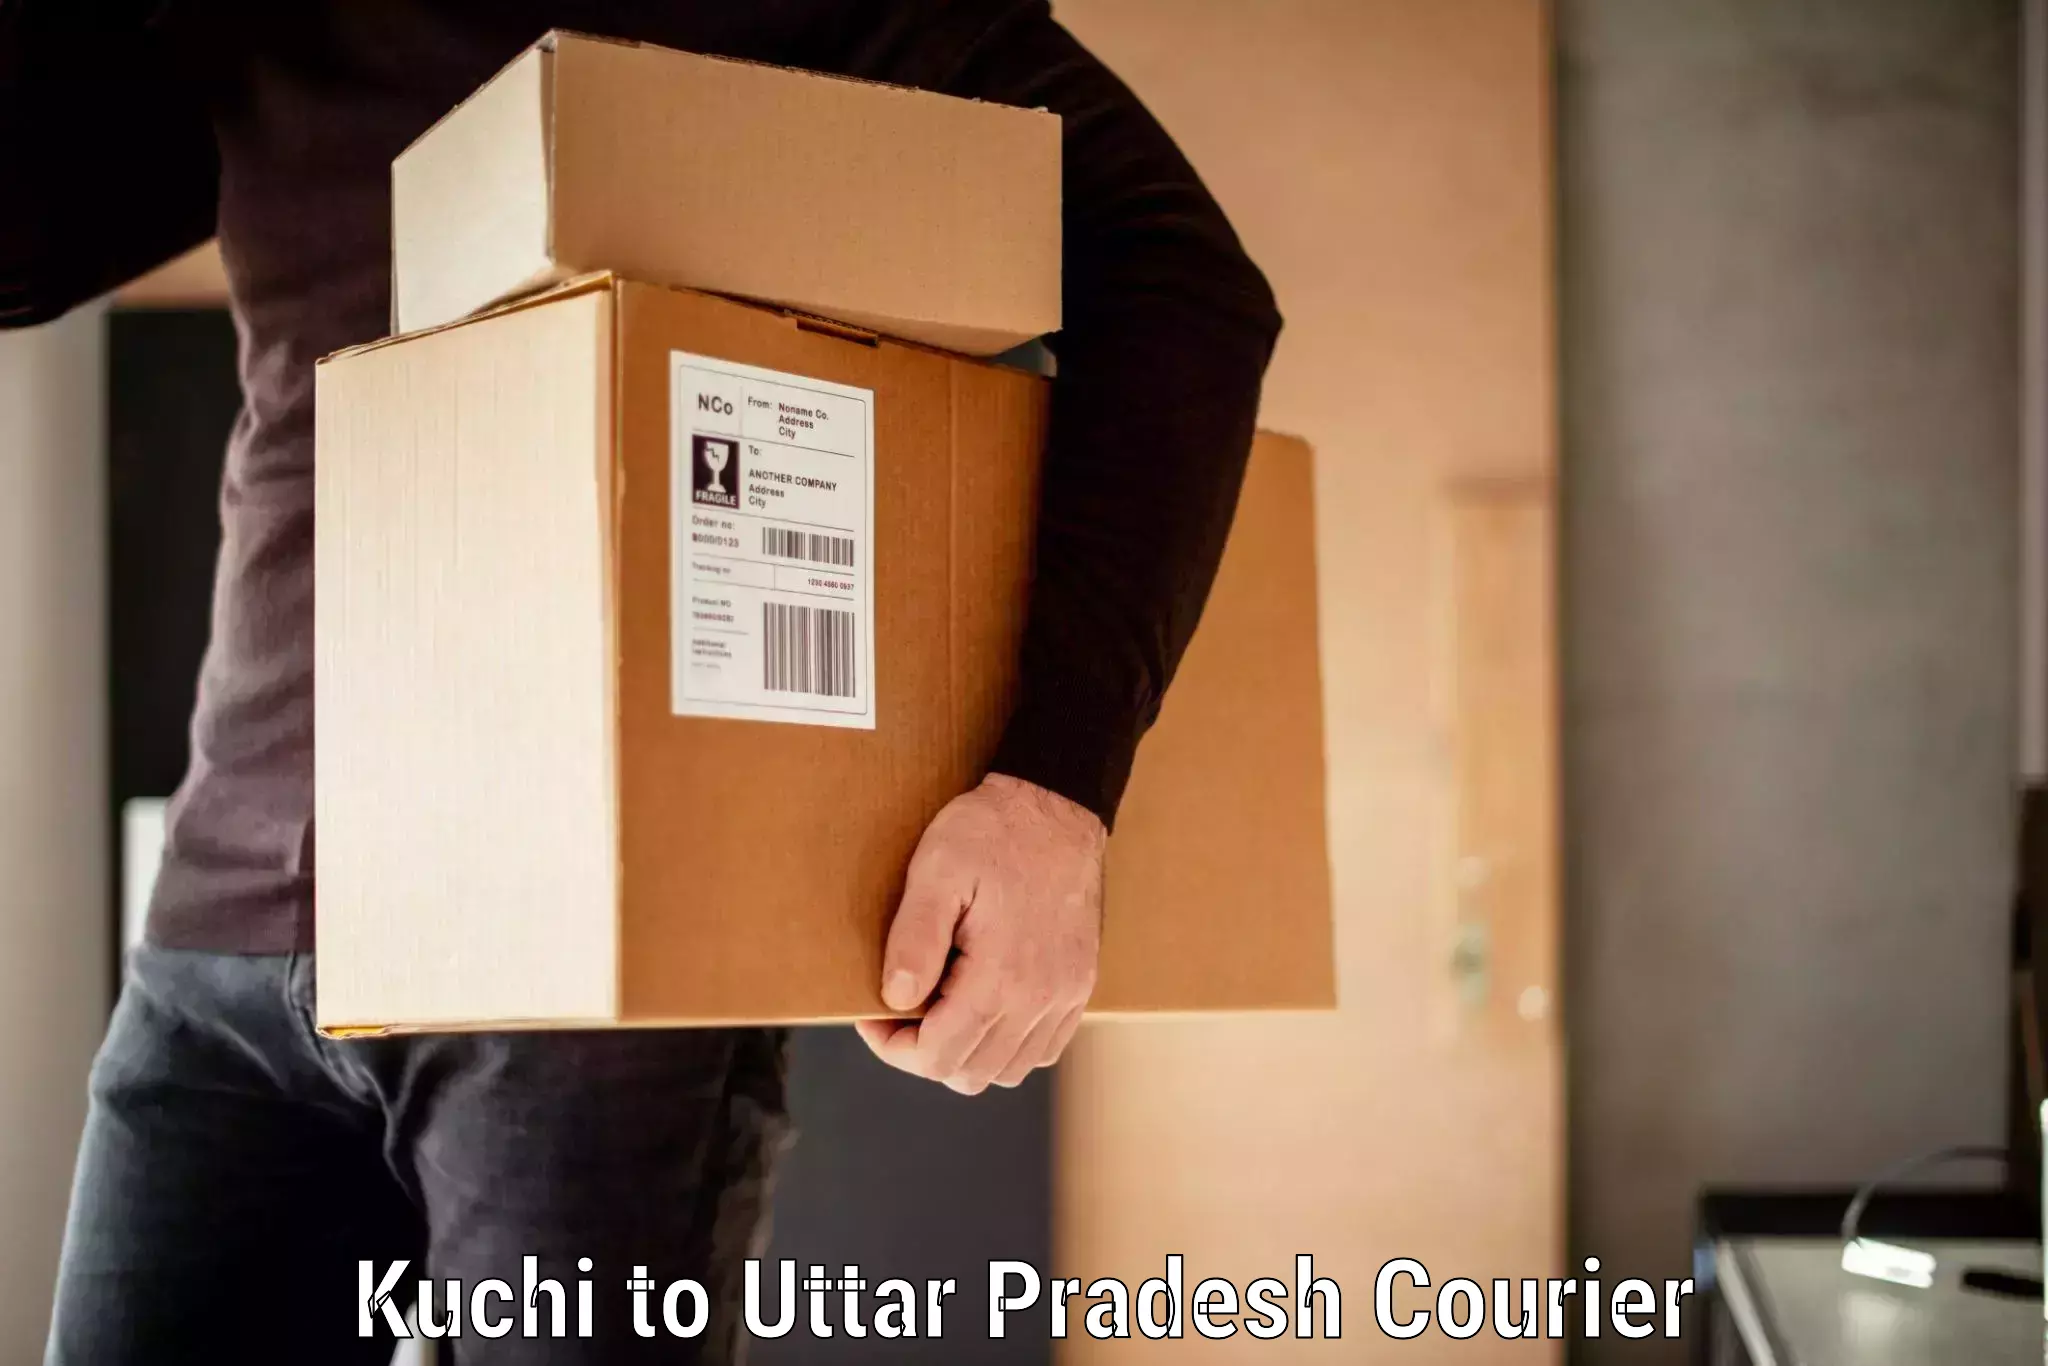 Luggage forwarding service Kuchi to Baksha